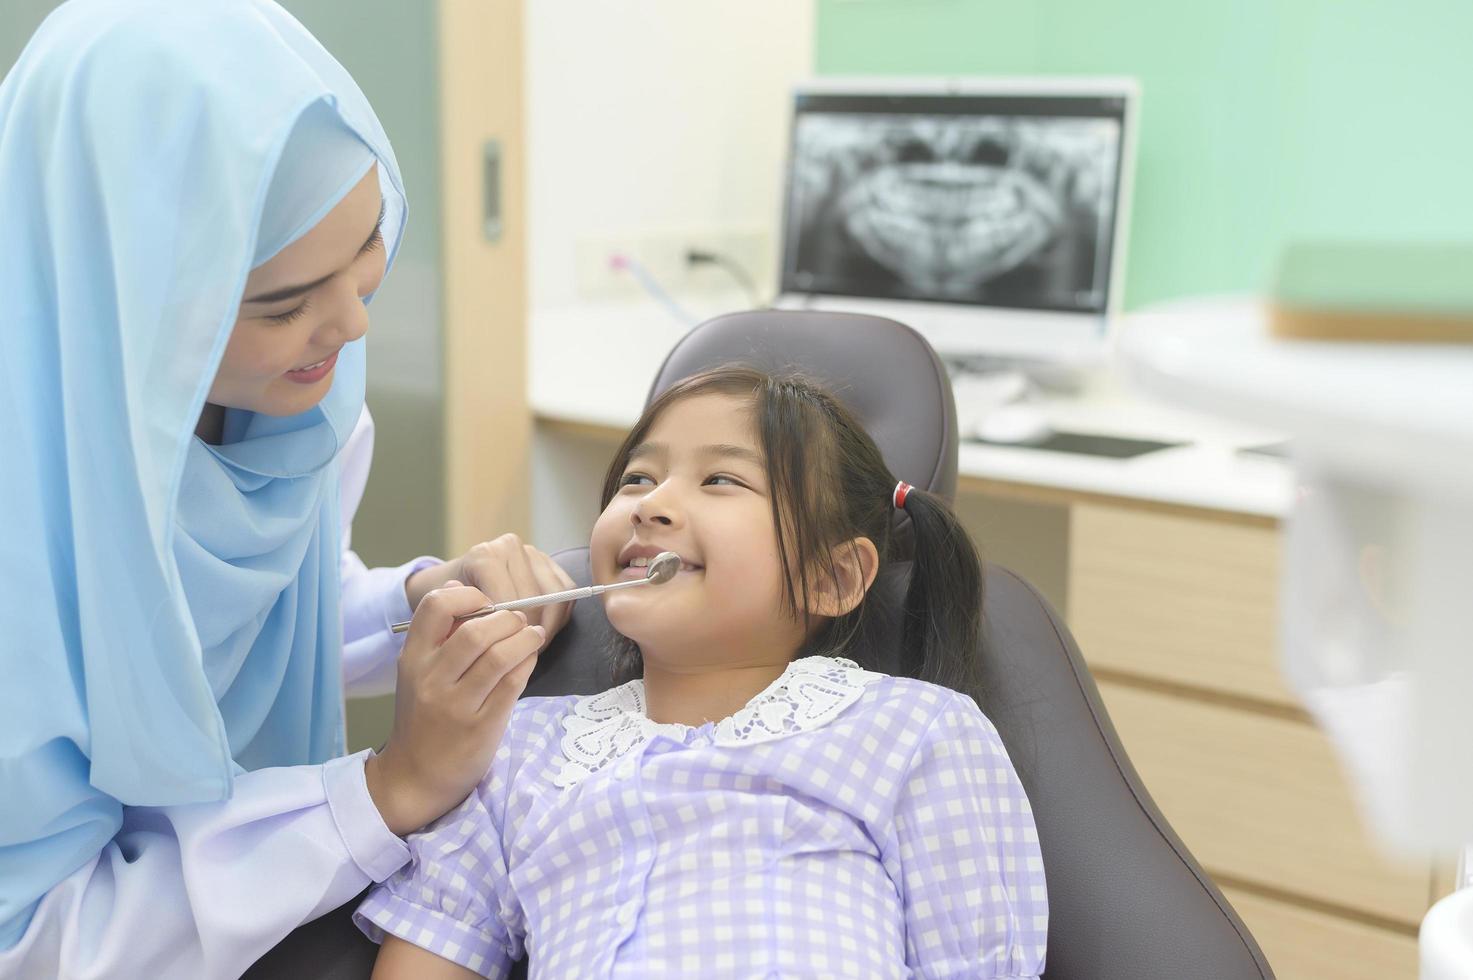 une petite fille mignonne ayant des dents examinées par un dentiste musulman dans une clinique dentaire, un contrôle des dents et un concept de dents saines photo